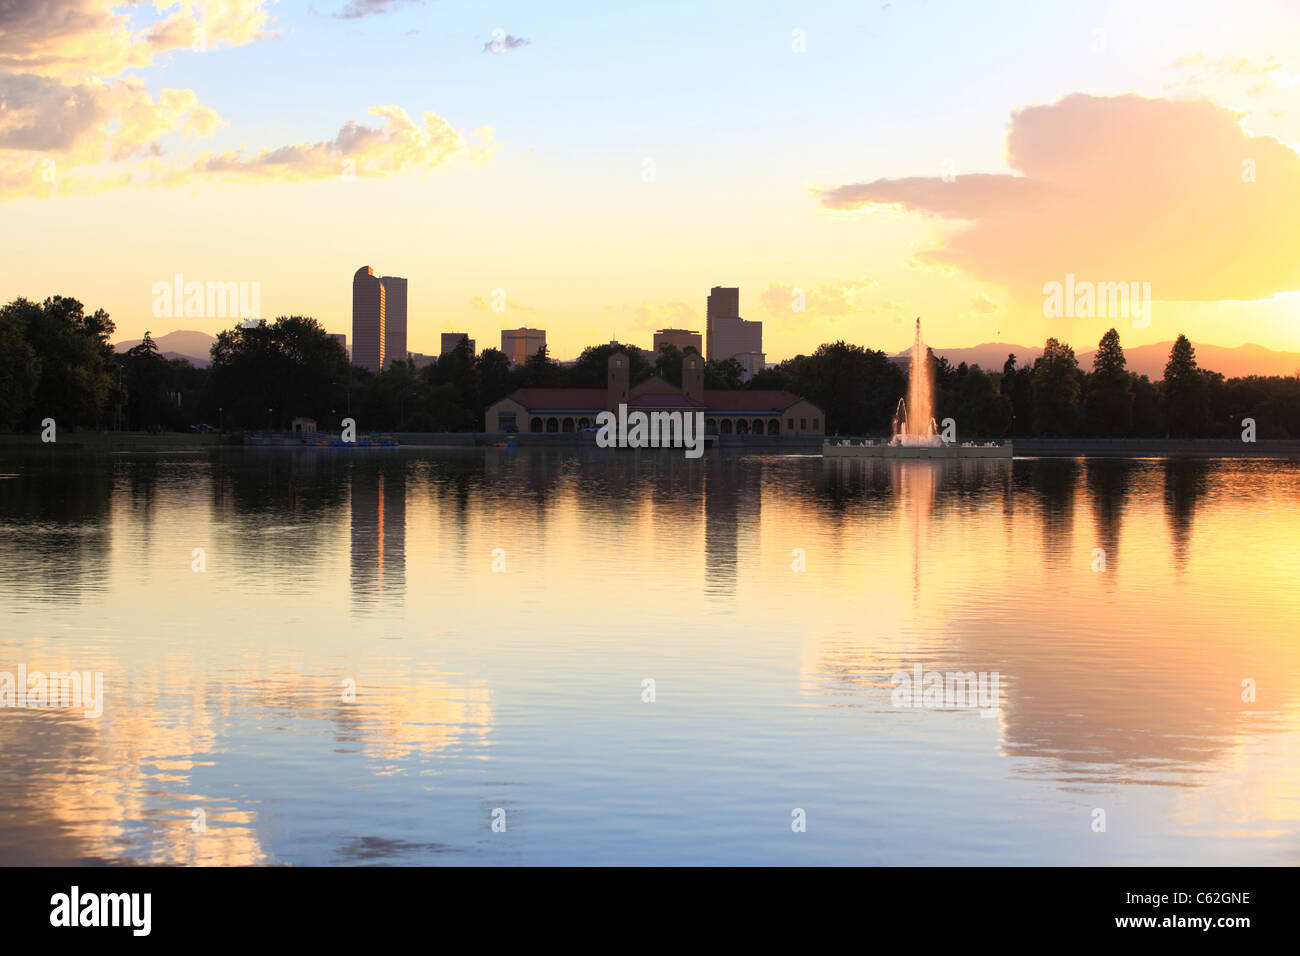 La vista del tramonto sul centro di Denver, Colorado. Immagine catturata a City Park nel lago Ferril Foto Stock